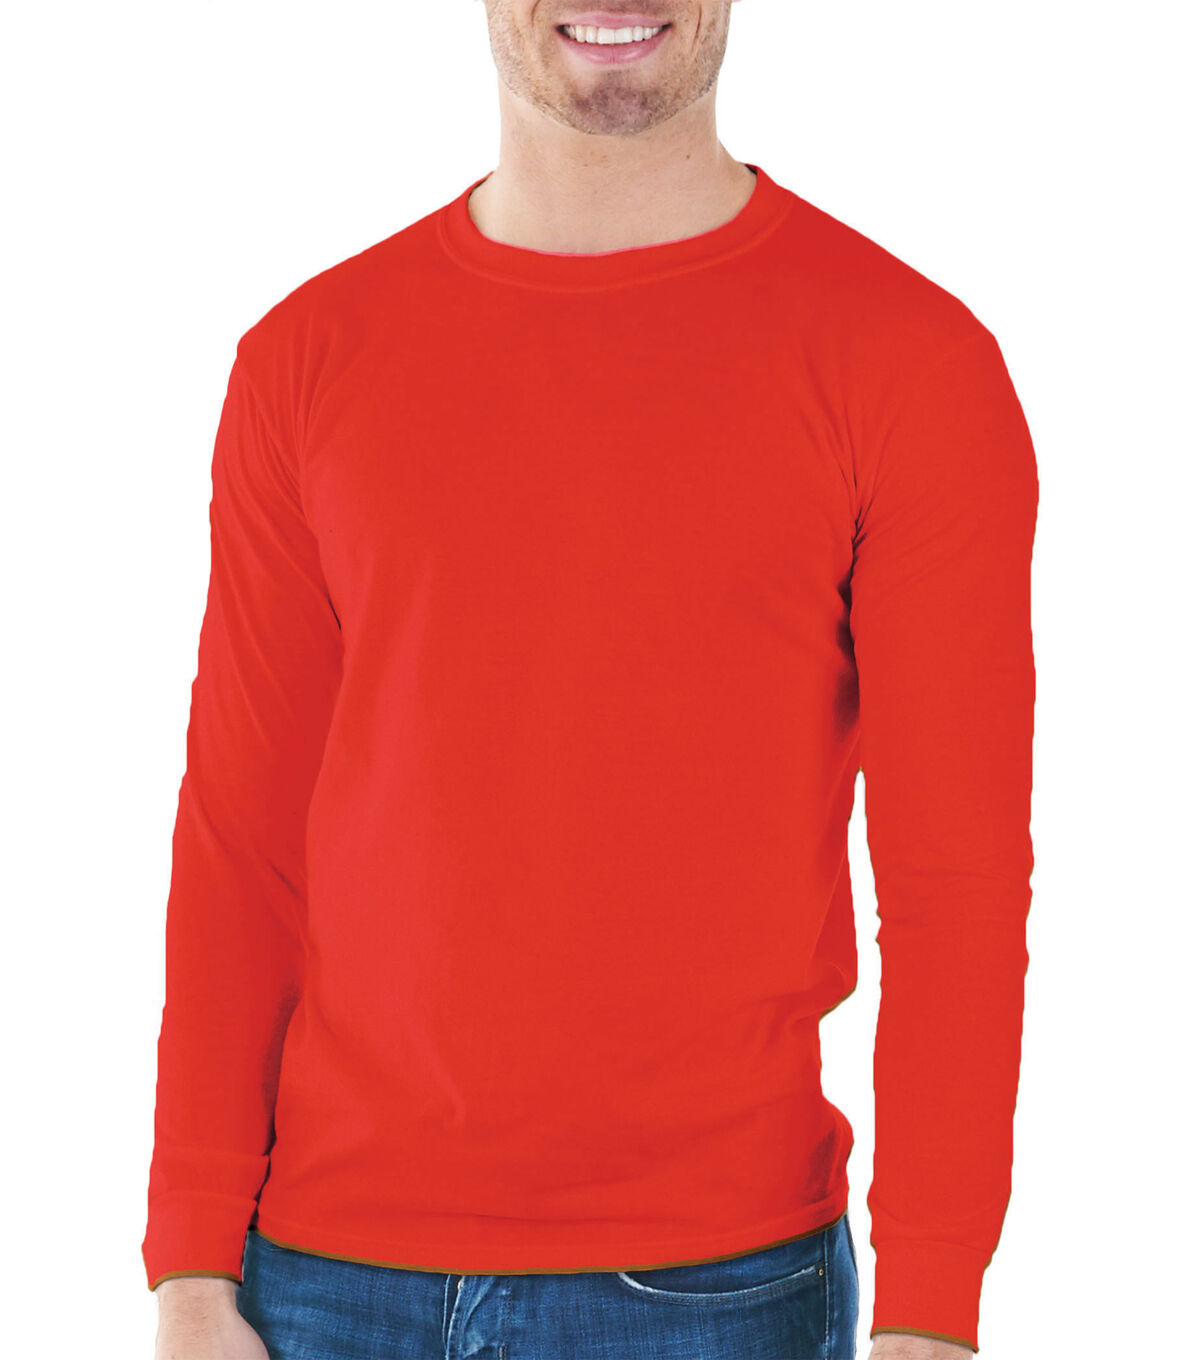 red full sleeve shirt